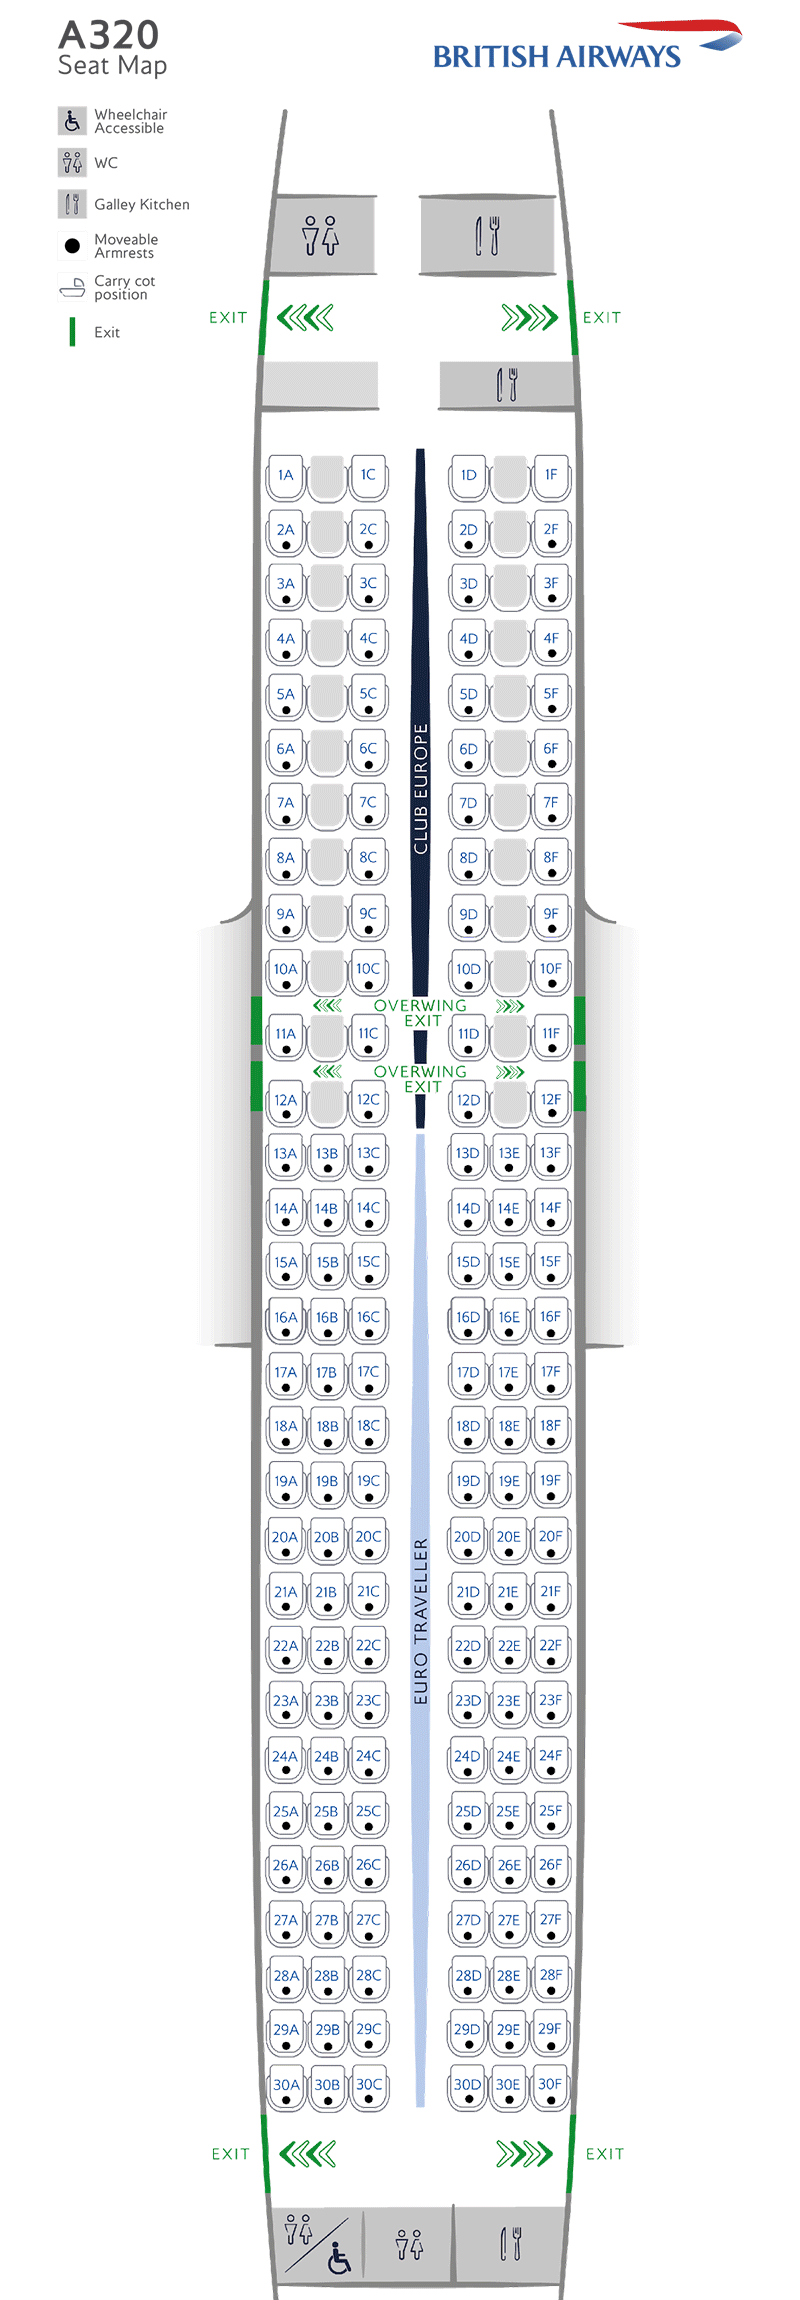 A319-131 seatmap